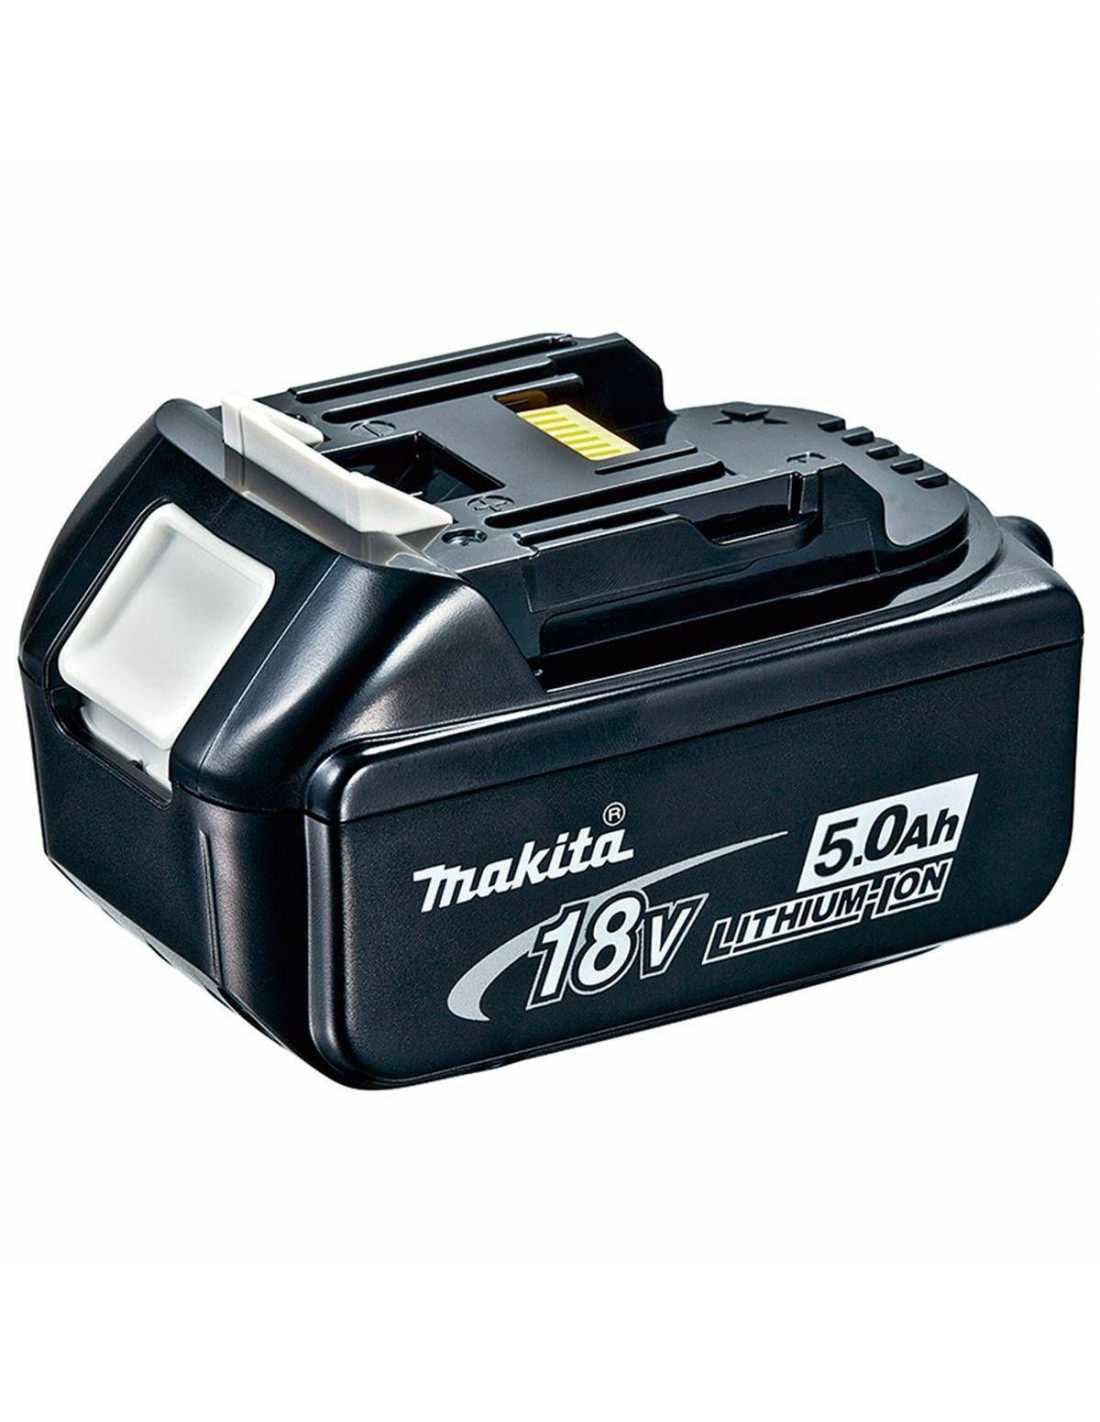 Makita-Set mit 10 Werkzeugen + 3 Schlägern + Ladegerät + 2 Taschen DLX1043BL3